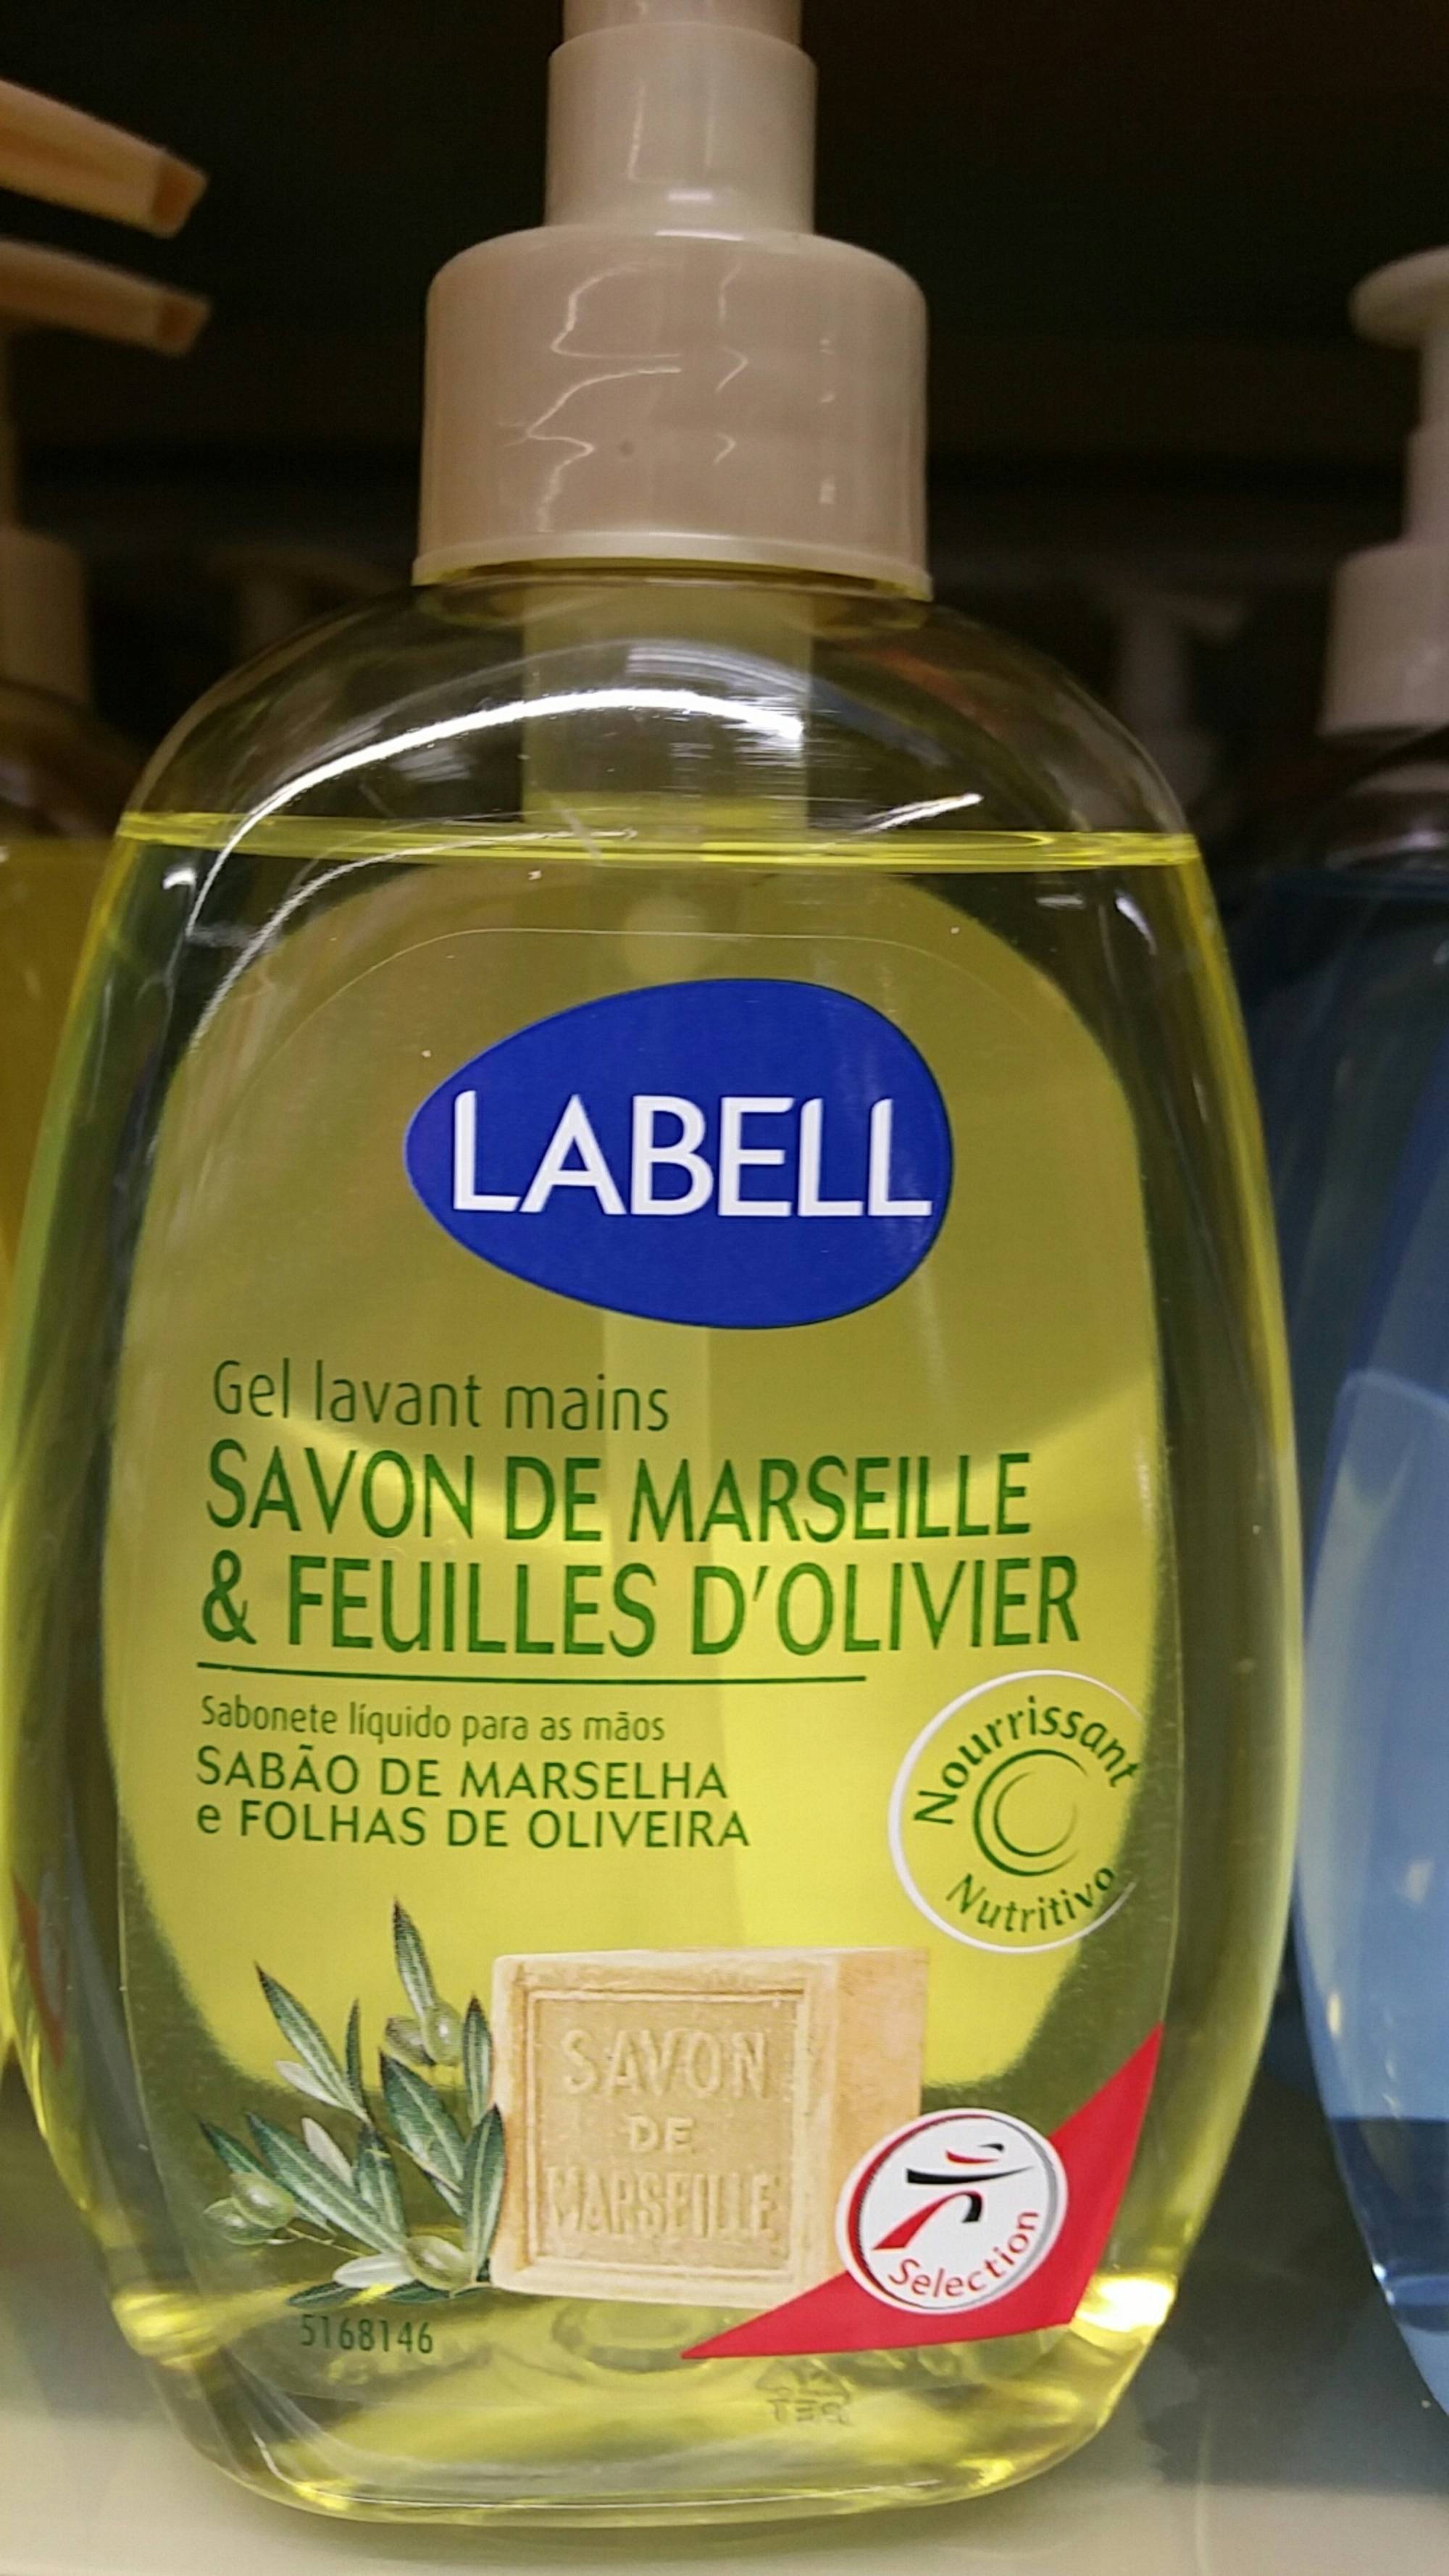 LABELL - Gel lavant mains savon de marseille & feuilles d'olivier